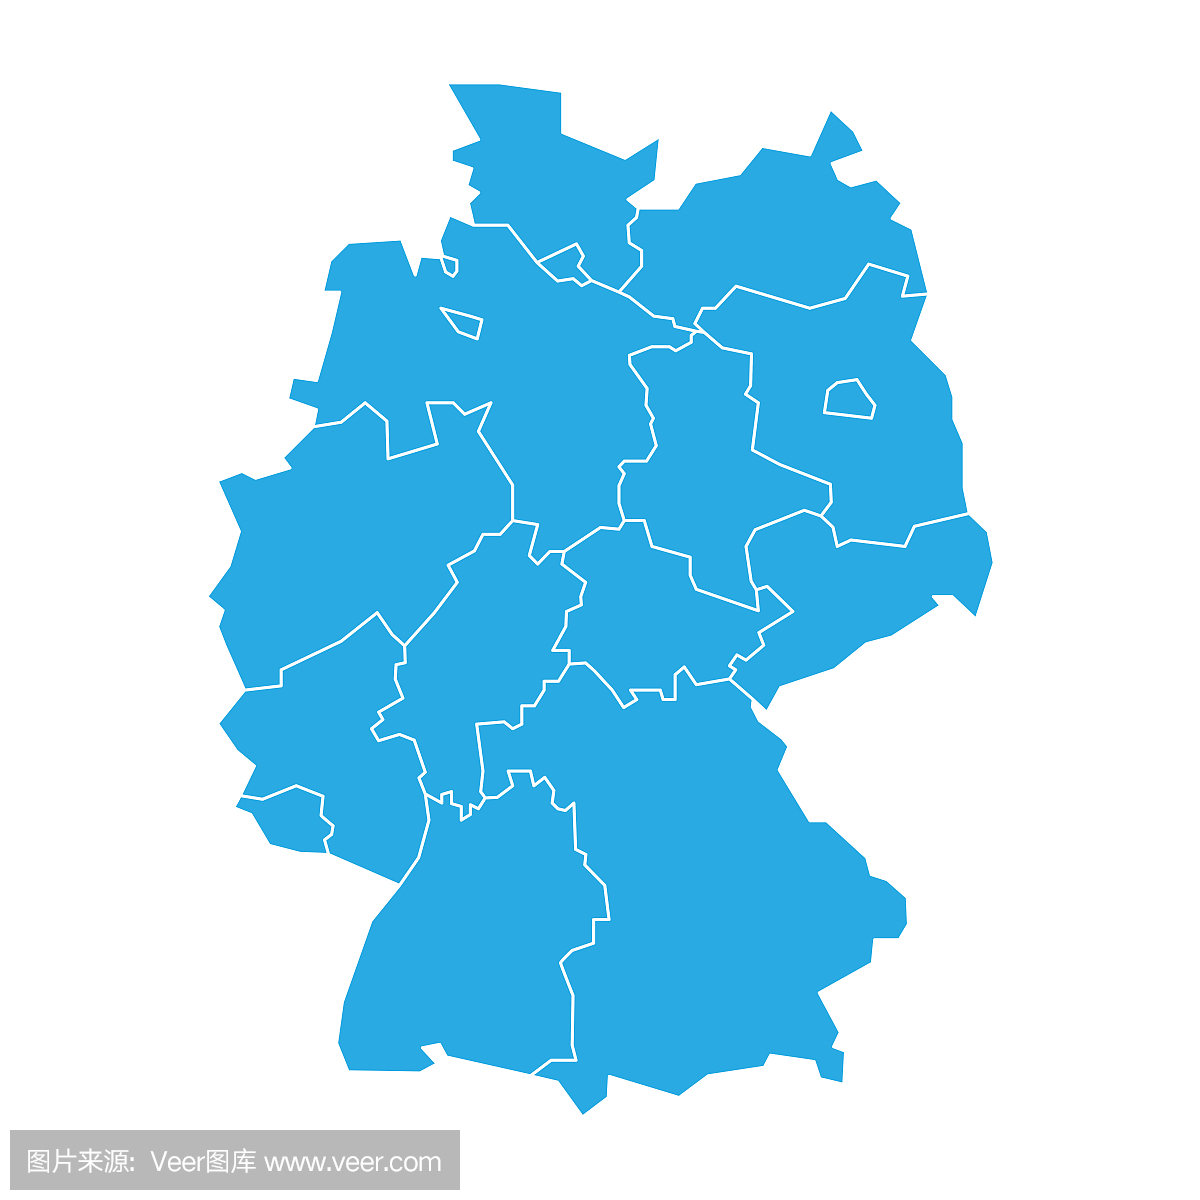 德国地图分为13个联邦州和3个城邦 - 柏林,不来